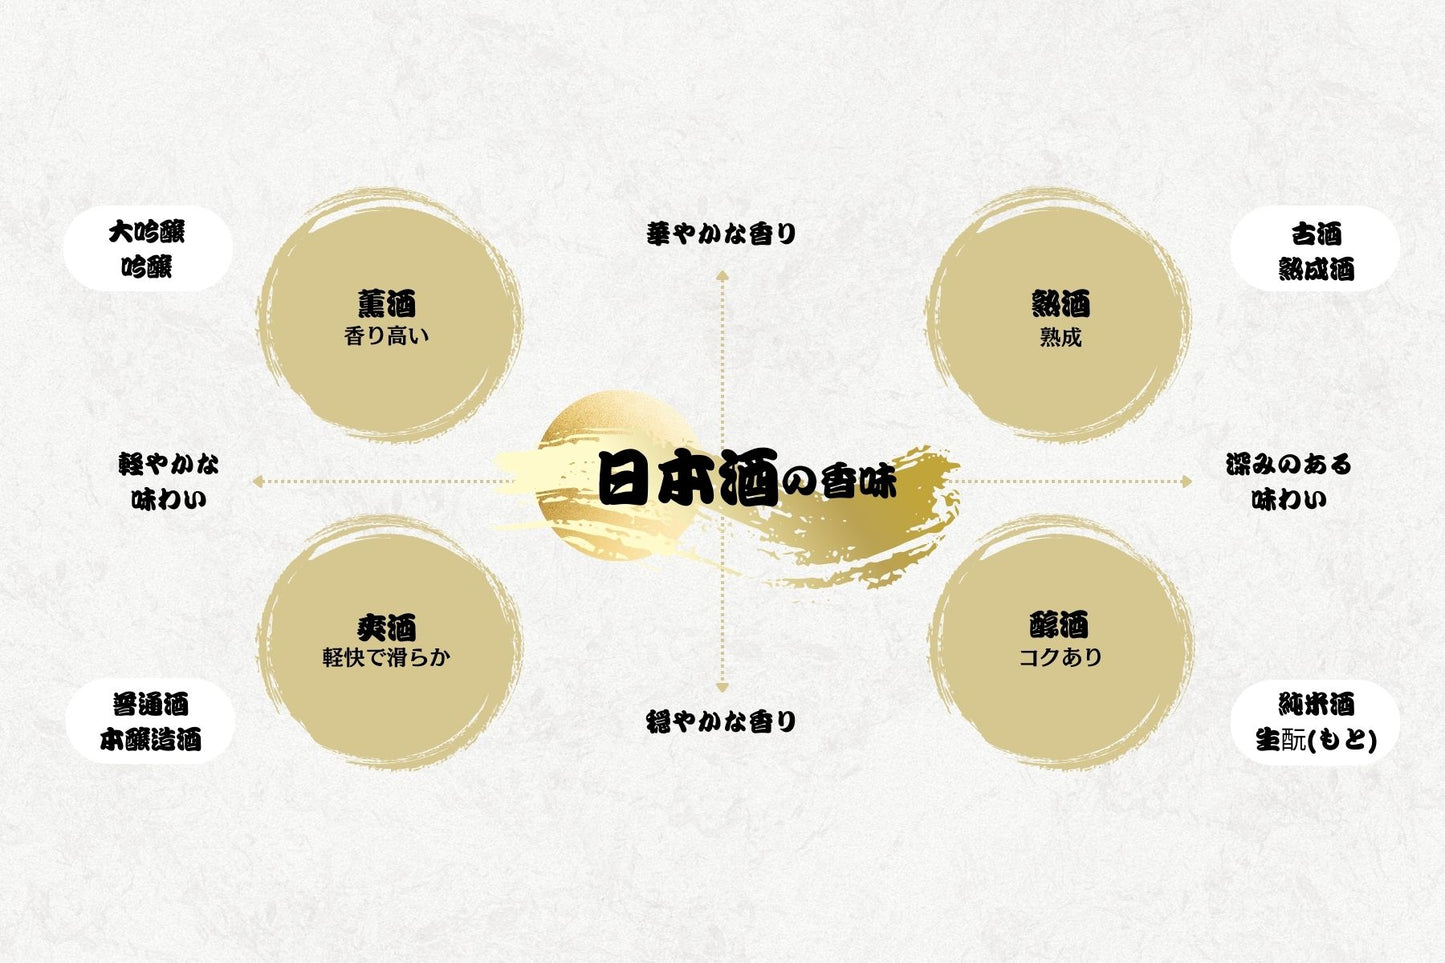 [2 件裝] 白神山地四季特級純米酒 720ml (52007)